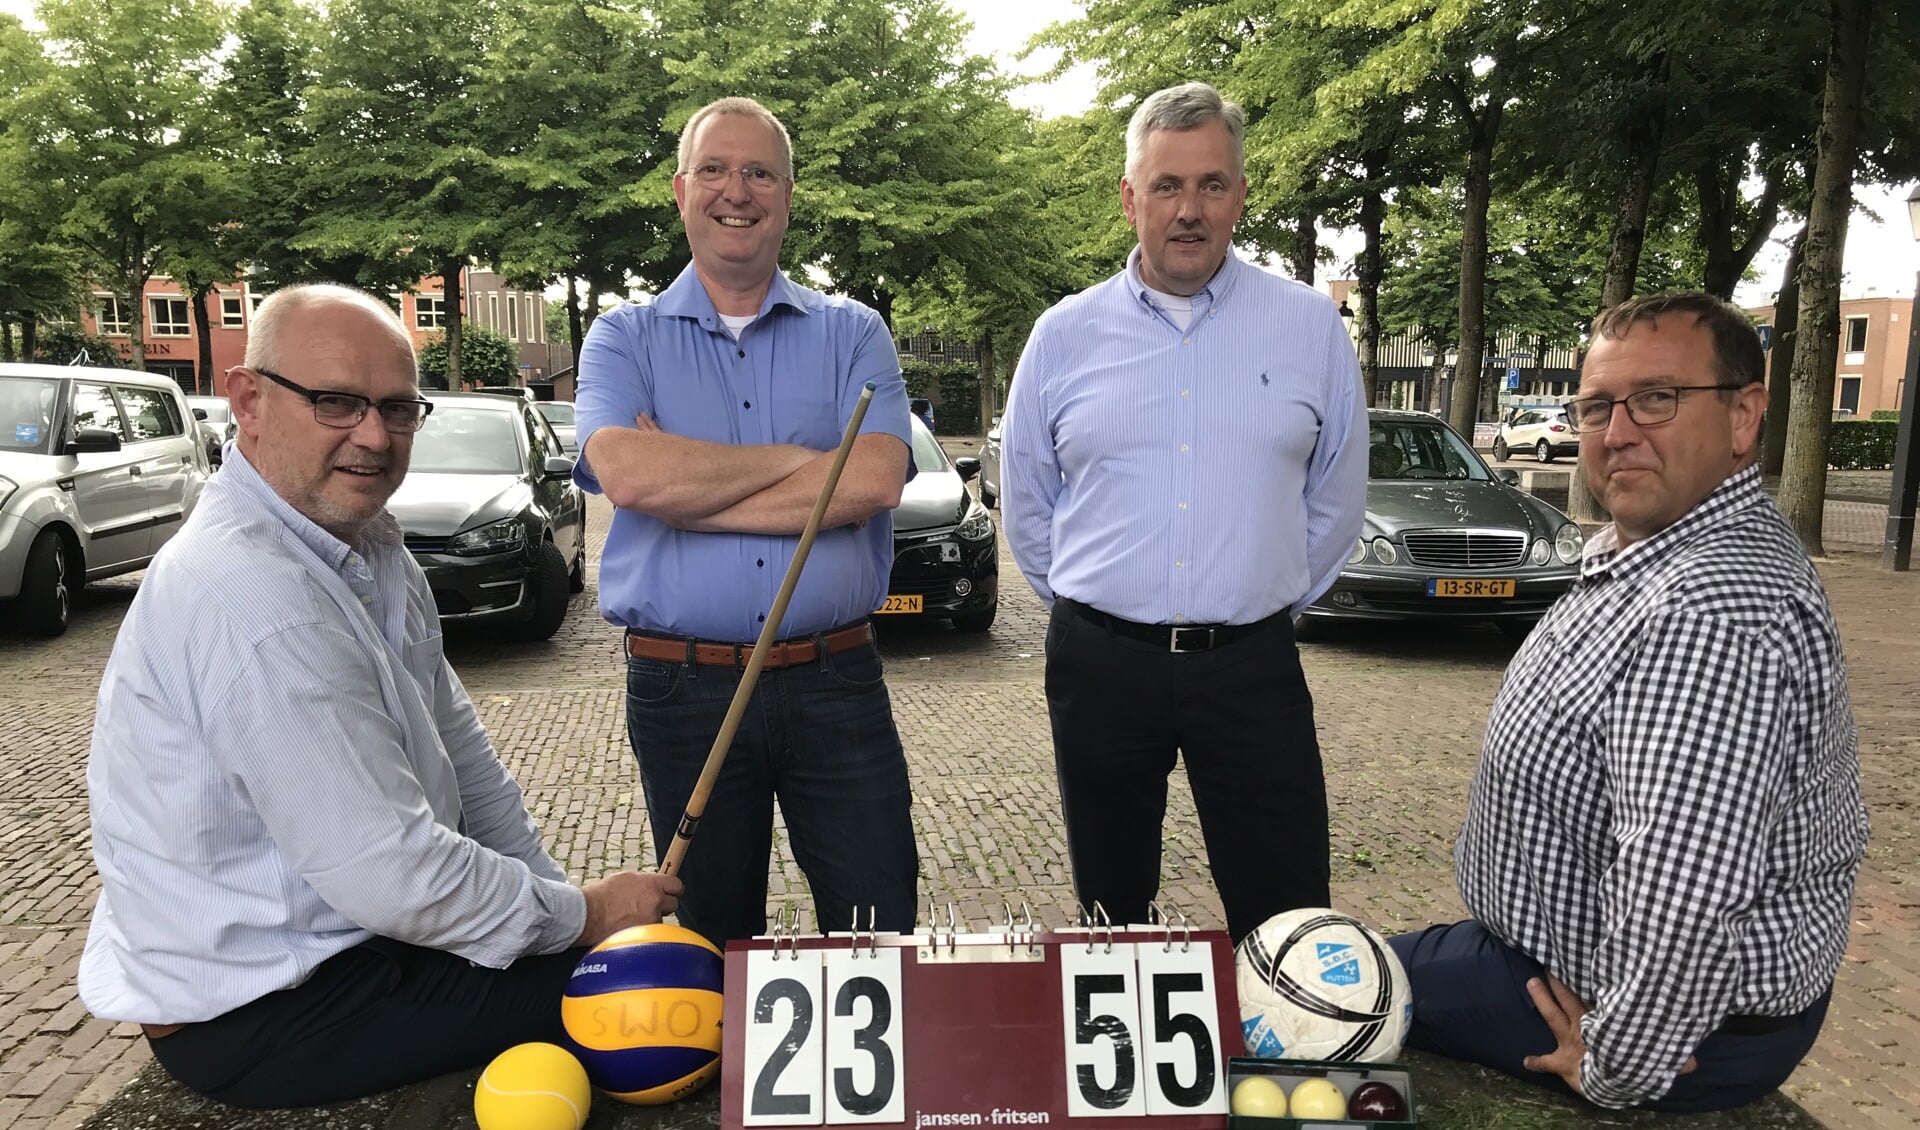 De Puttense Sport Federatie bij de oprichting in 2018 (vlnr): Geert Hoogerduijn (secretaris), Albert de Bruin (algemeen lid), Harm Baarslag (voorzitter) en Gert Timmer (penningmeester).